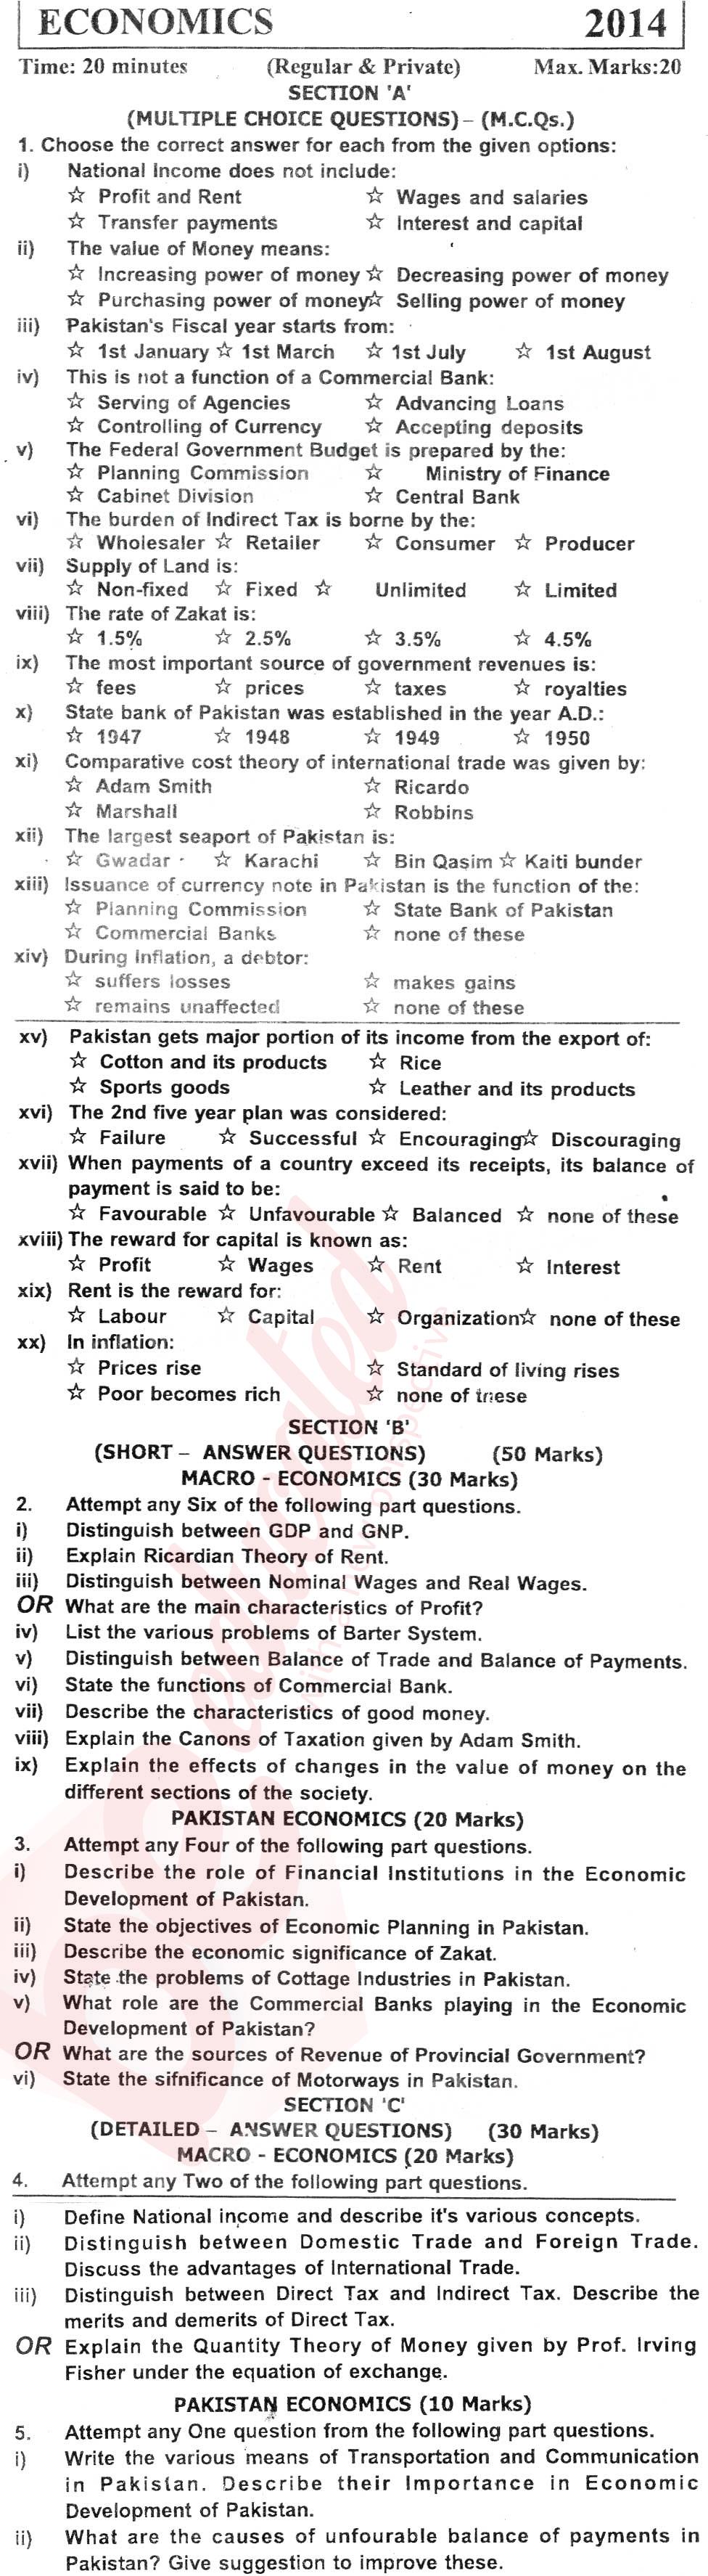 Economics FA Part 2 Past Paper Group 1 KPBTE 2014